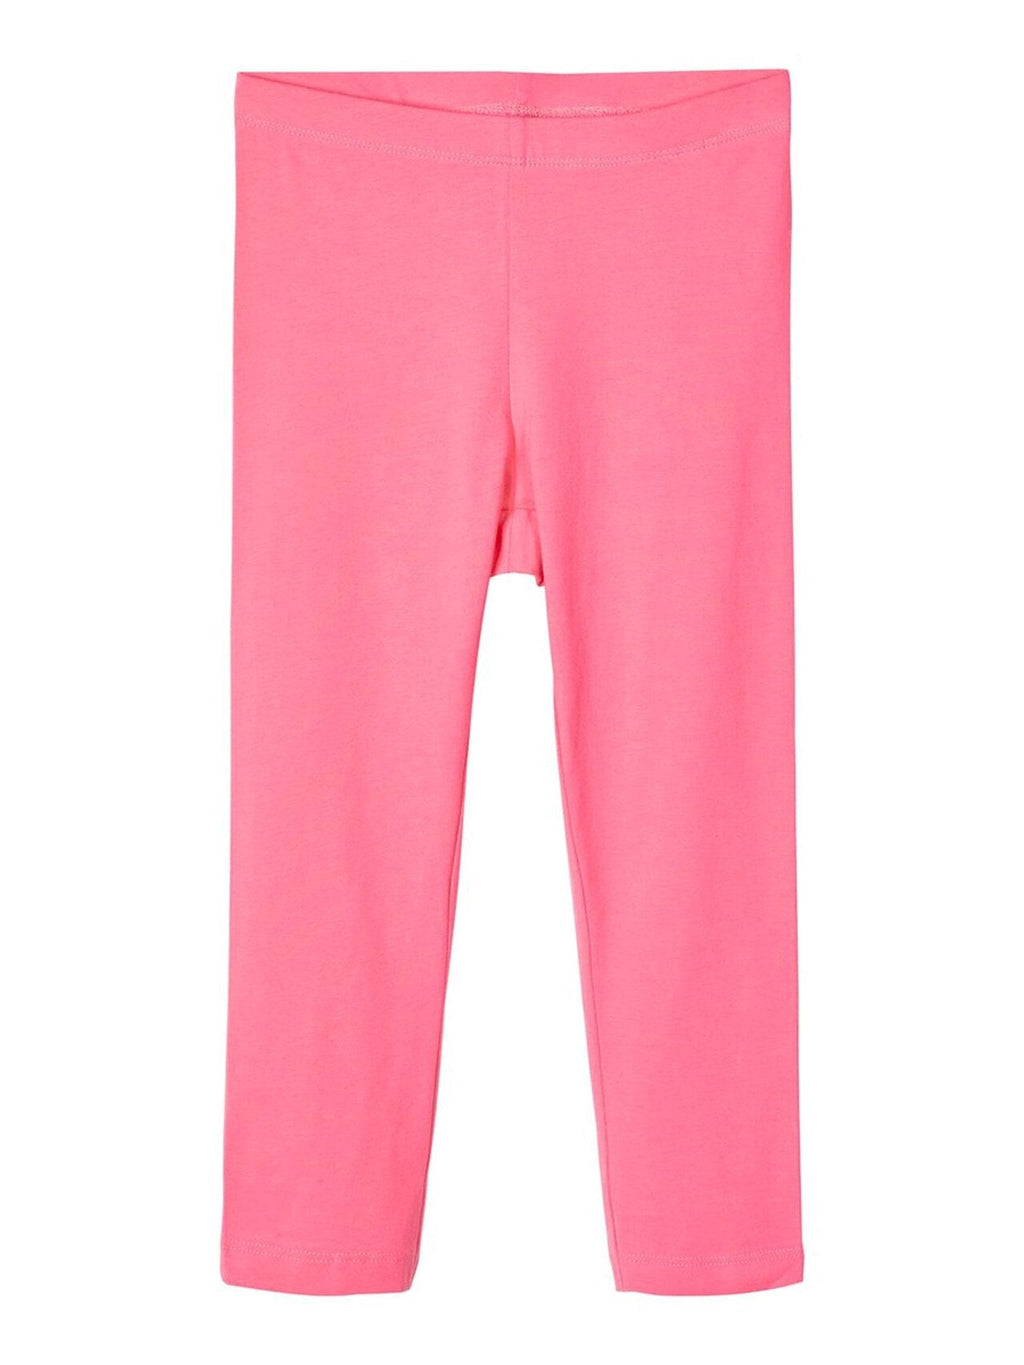 Capri Leggings - Pink